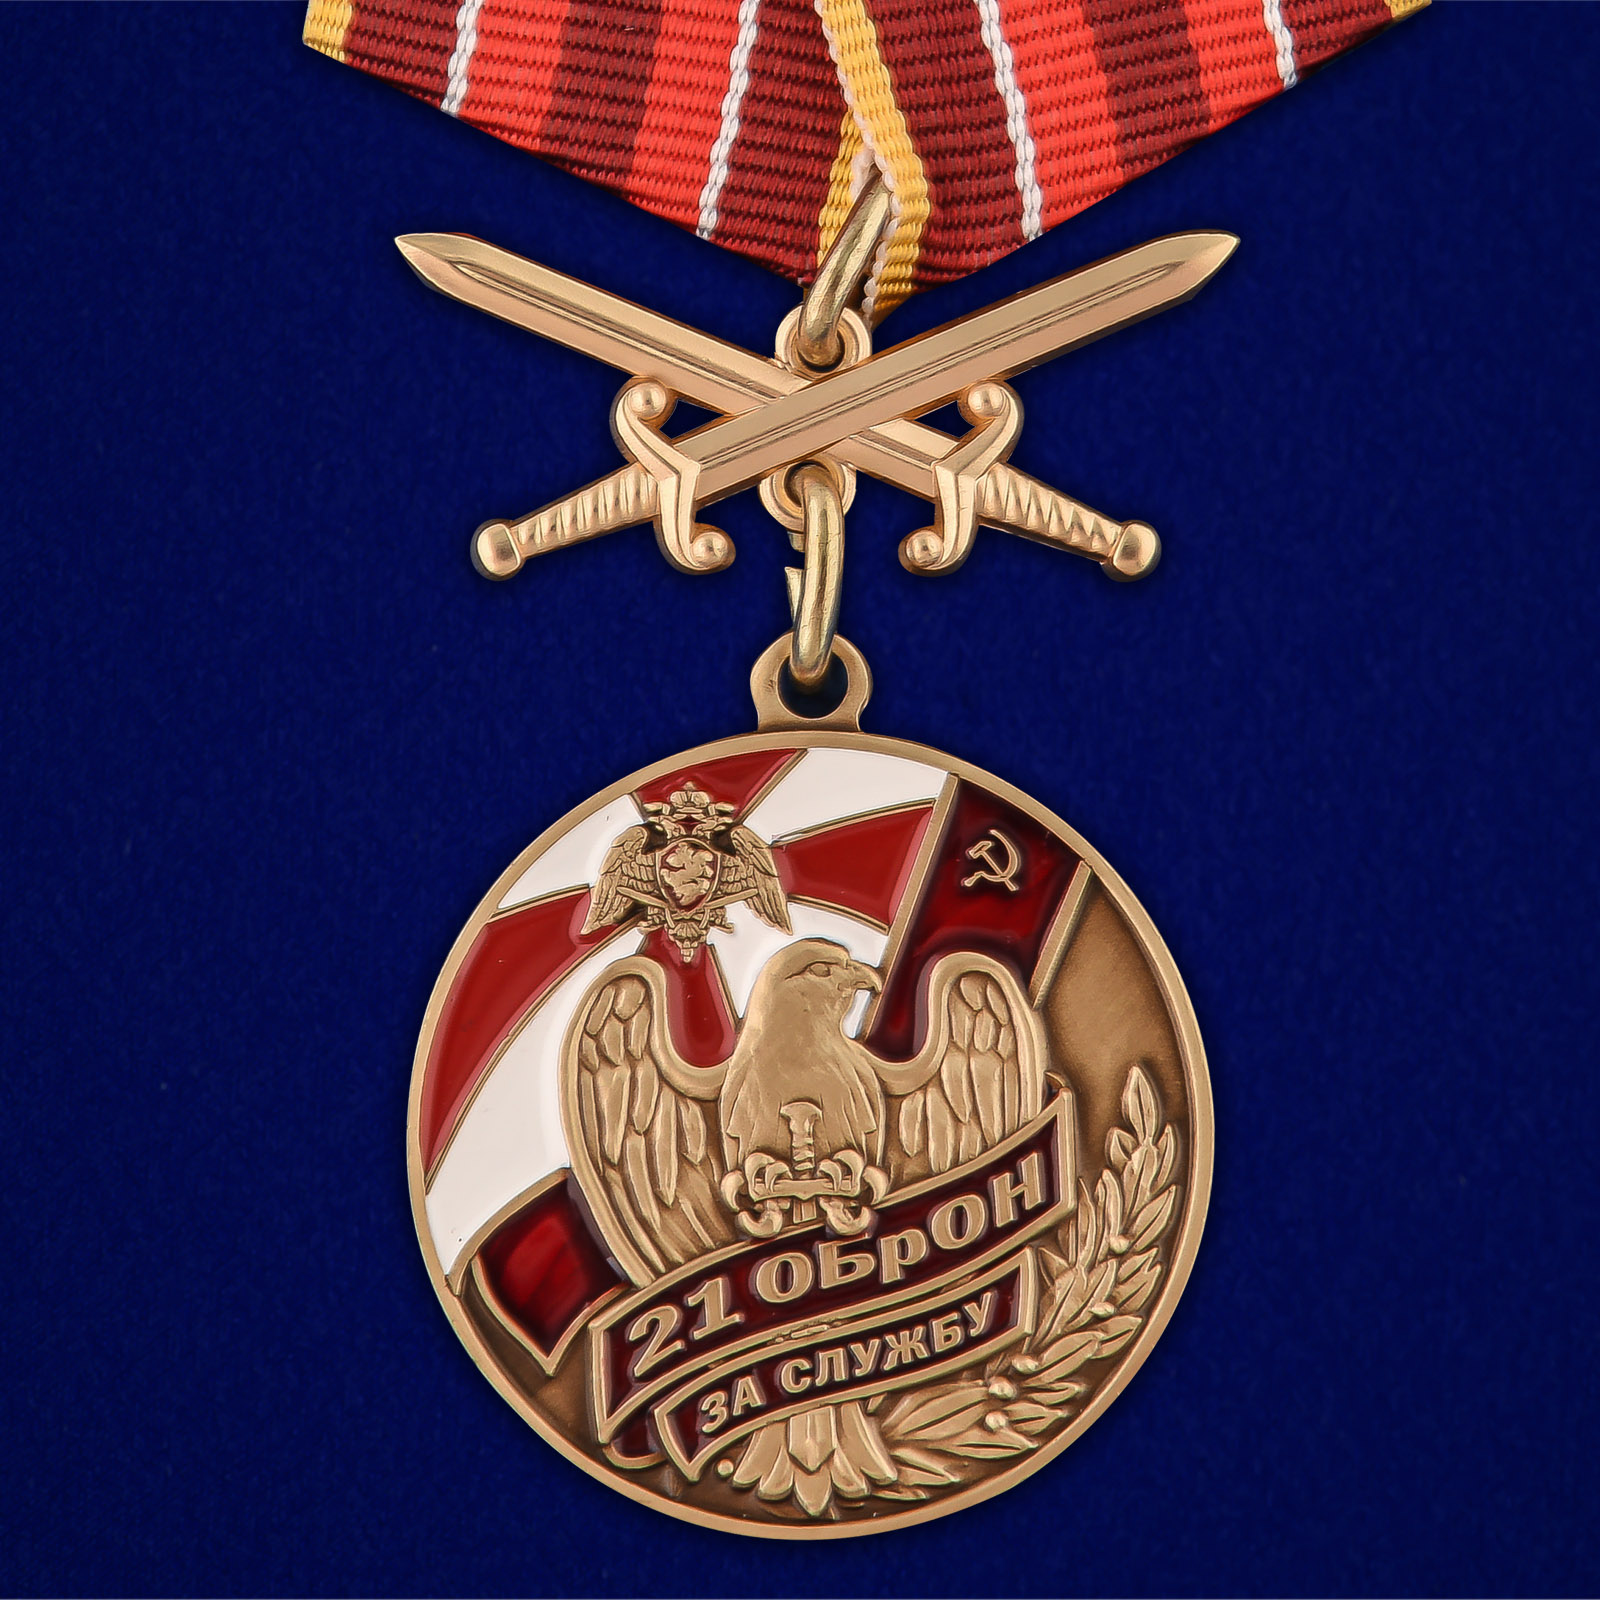 Купить медаль За службу в 21 ОБрОН по экономичной цене